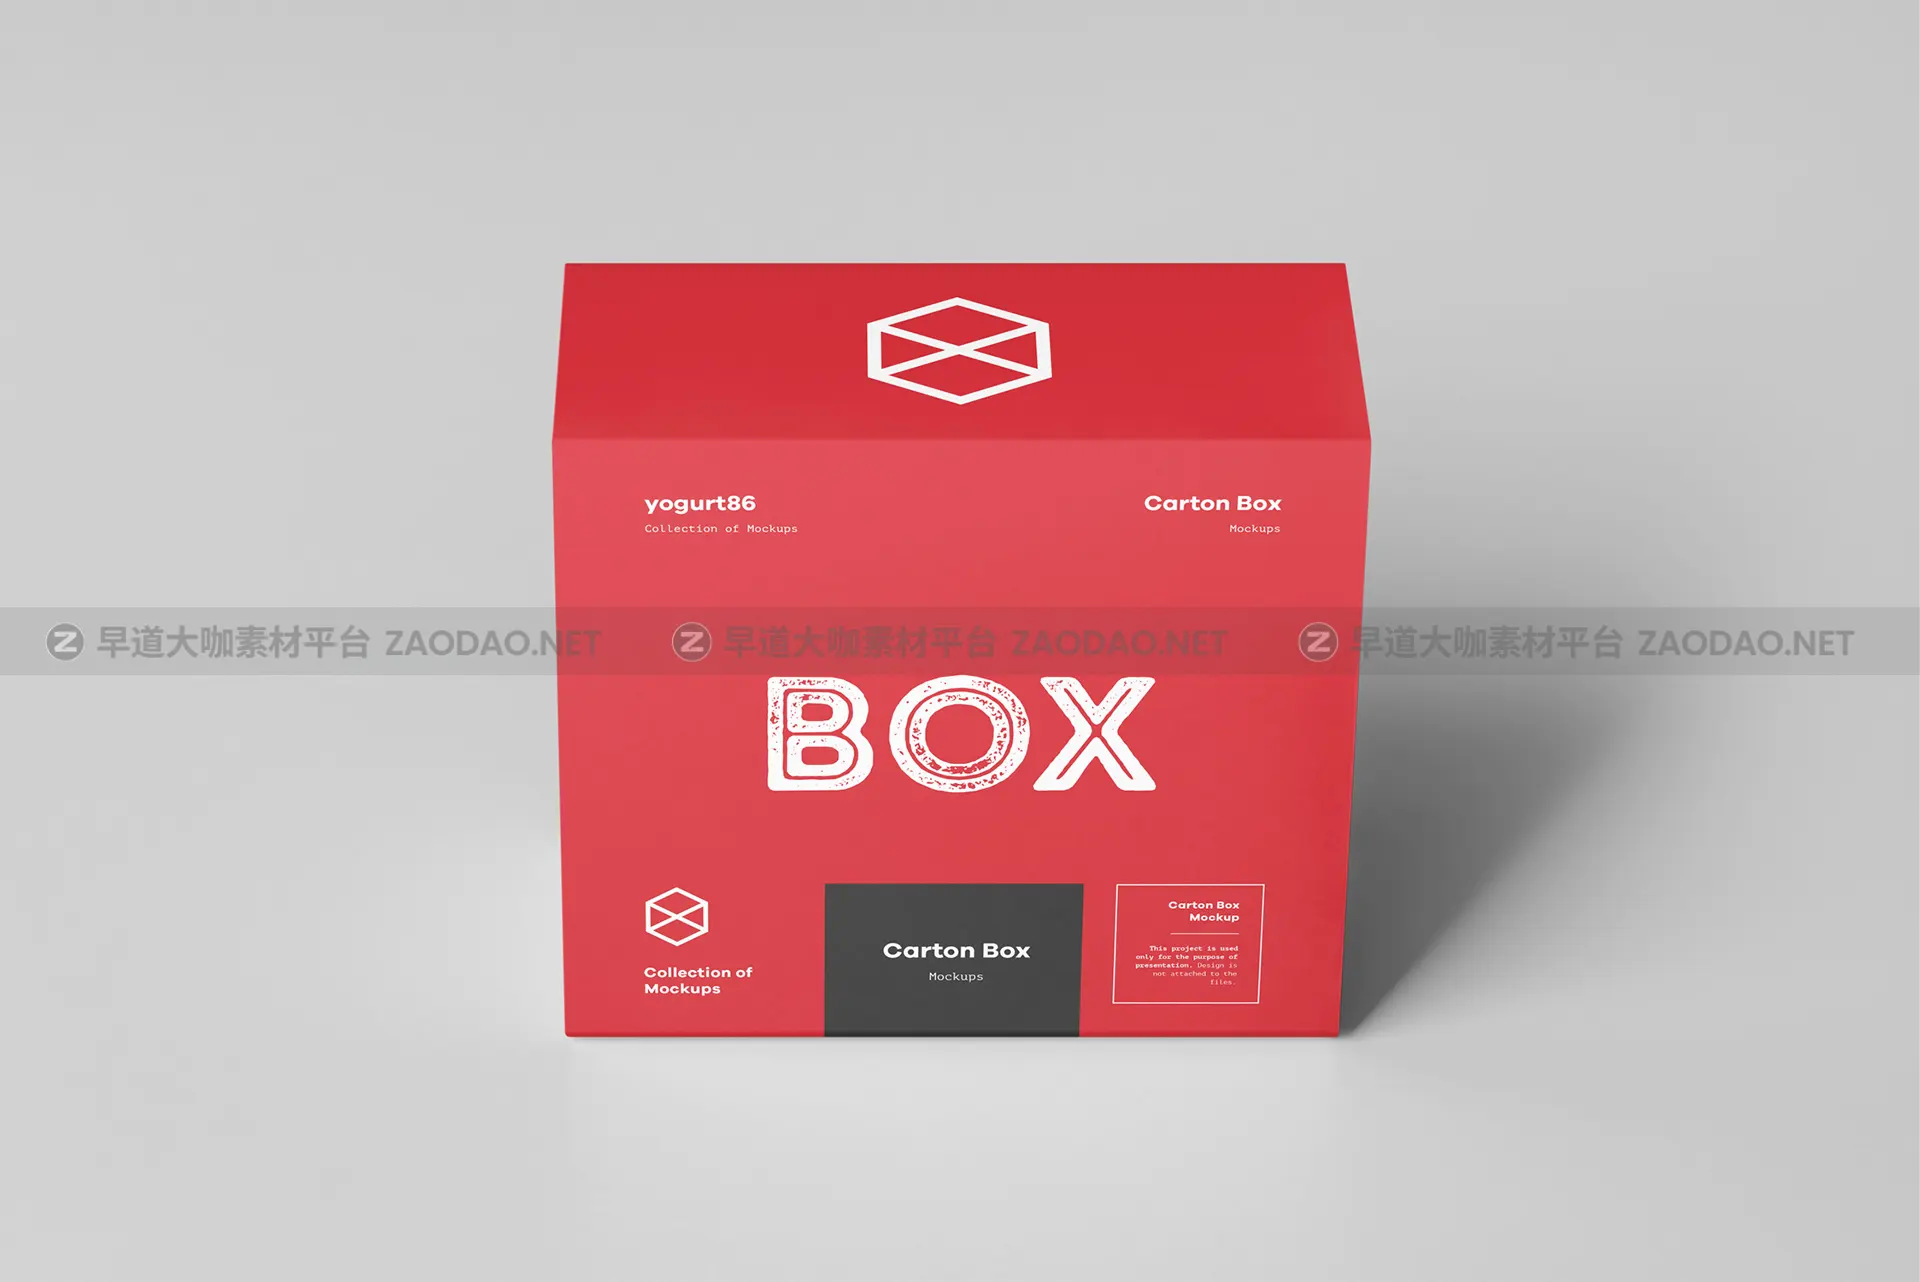 瓦楞纸产品包装纸箱设计展示样机模板 Carton Box Mockup 95x85x42插图3